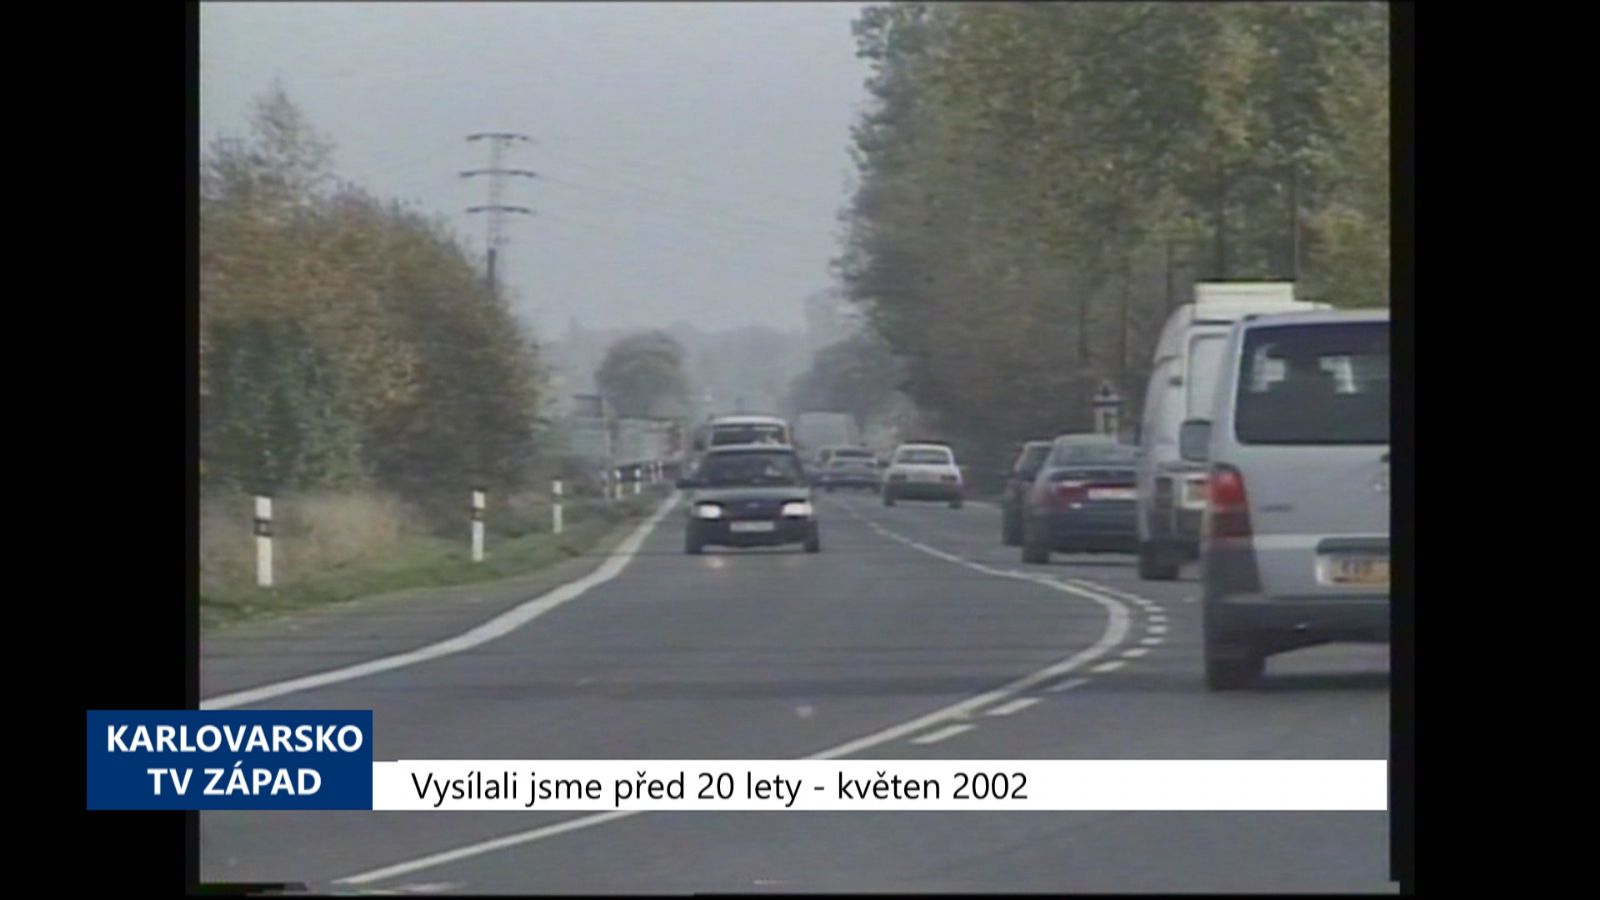 2002 – Cheb: Byl vybrán dodavatel stavby Průmyslového parku I (TV Západ)